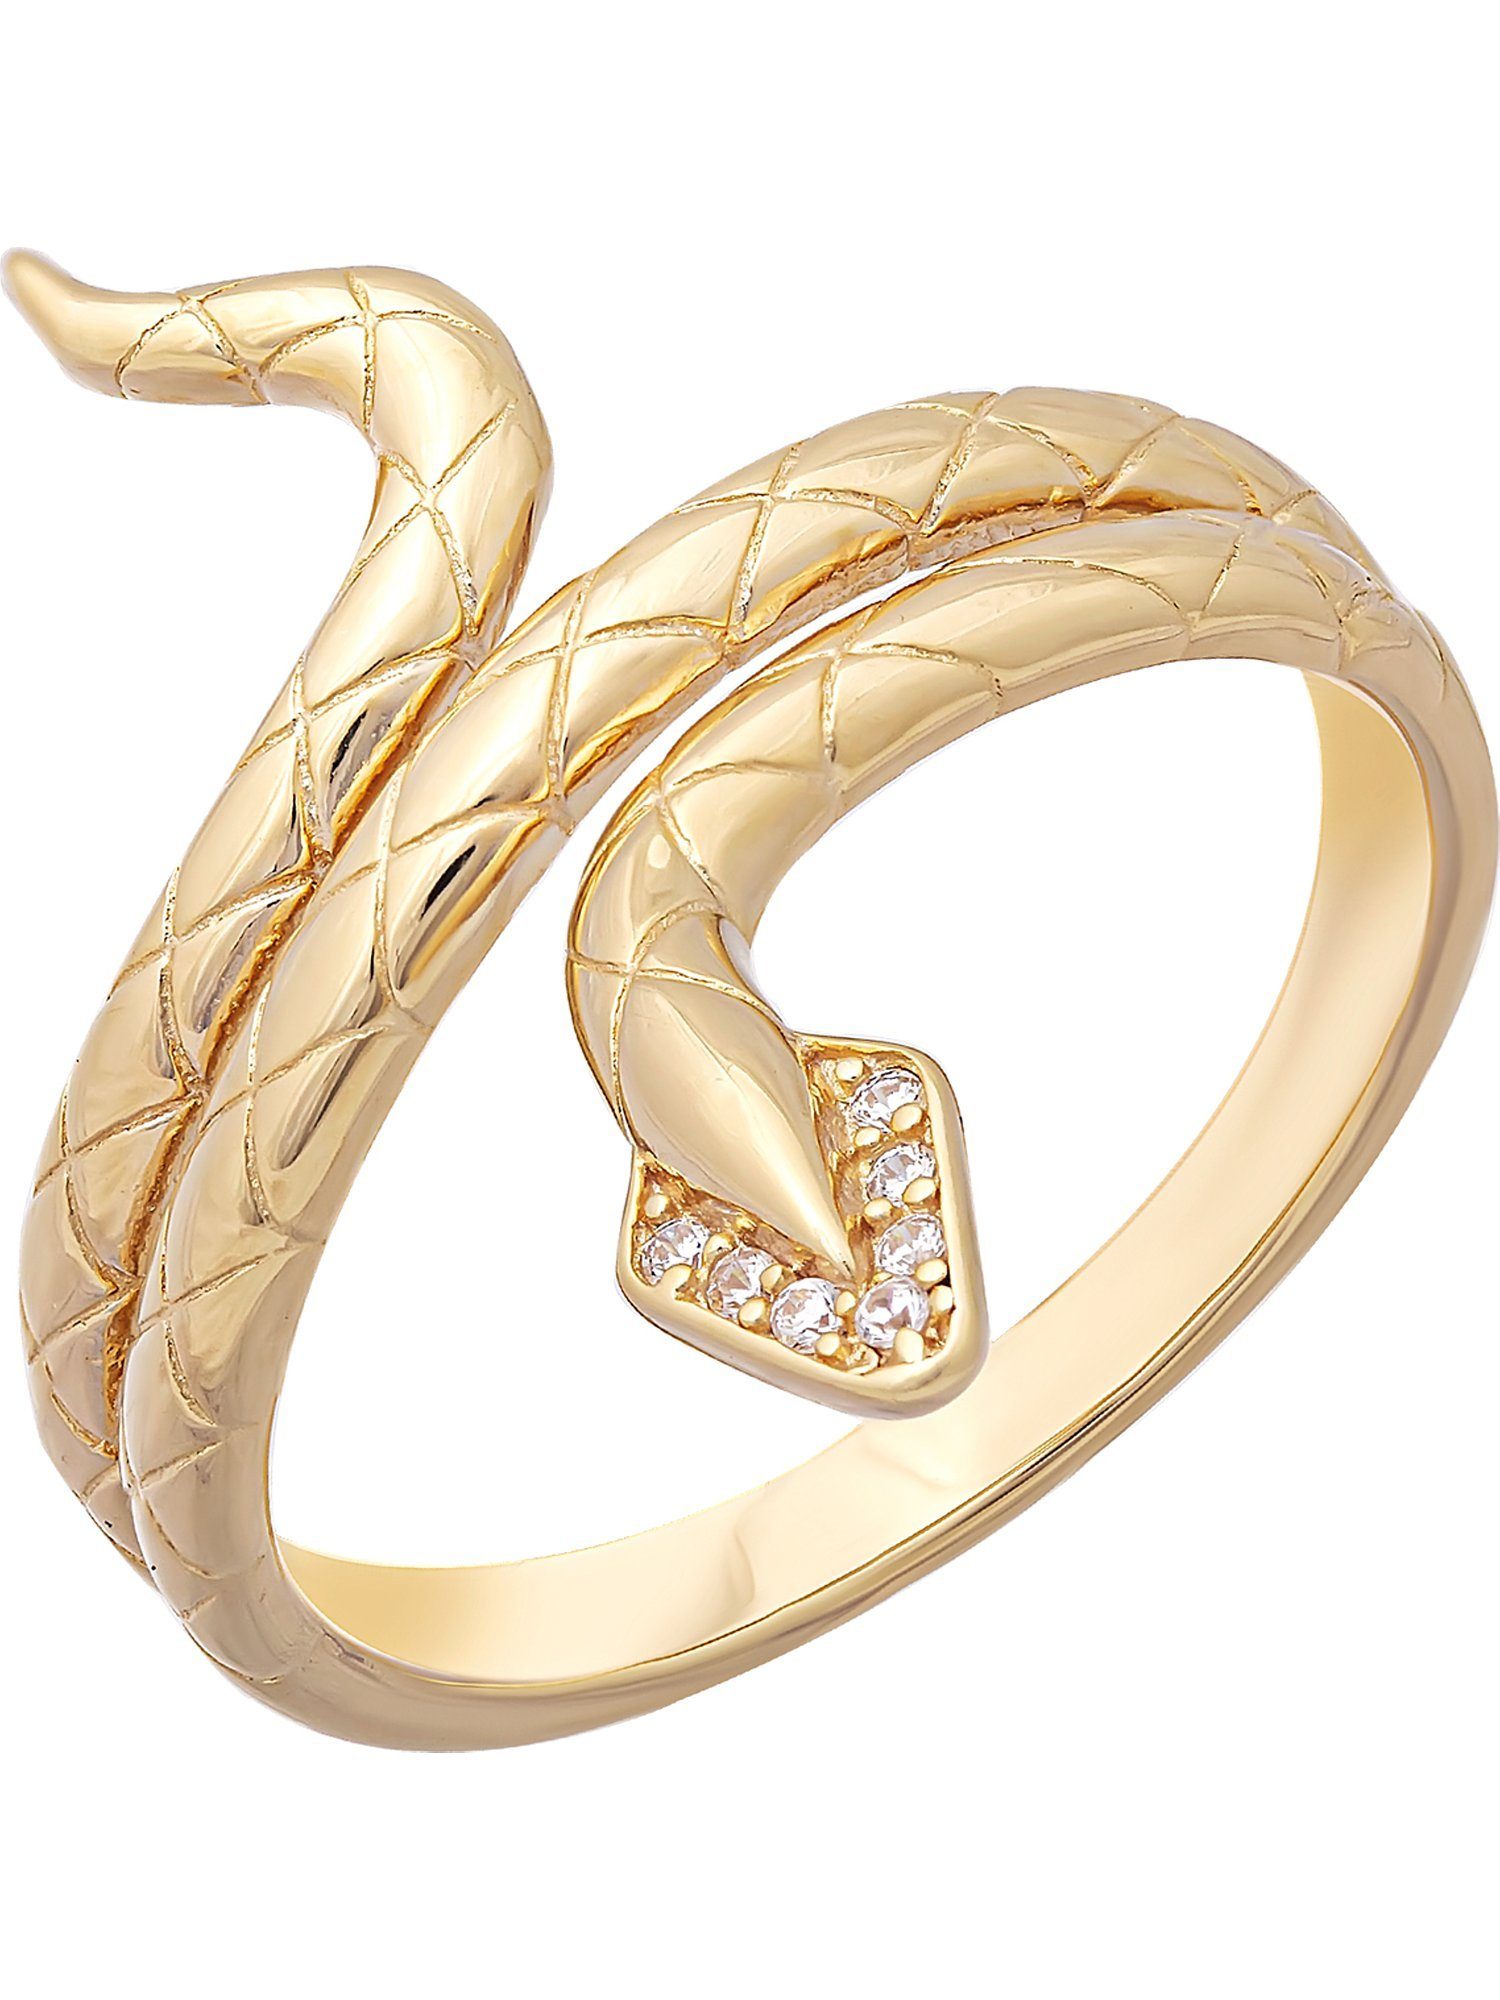 CAÏ Fingerring vergoldet Accessoire edle Zirkonia, jeden mit Schlange für Anlass Silber Dieses 925 ist